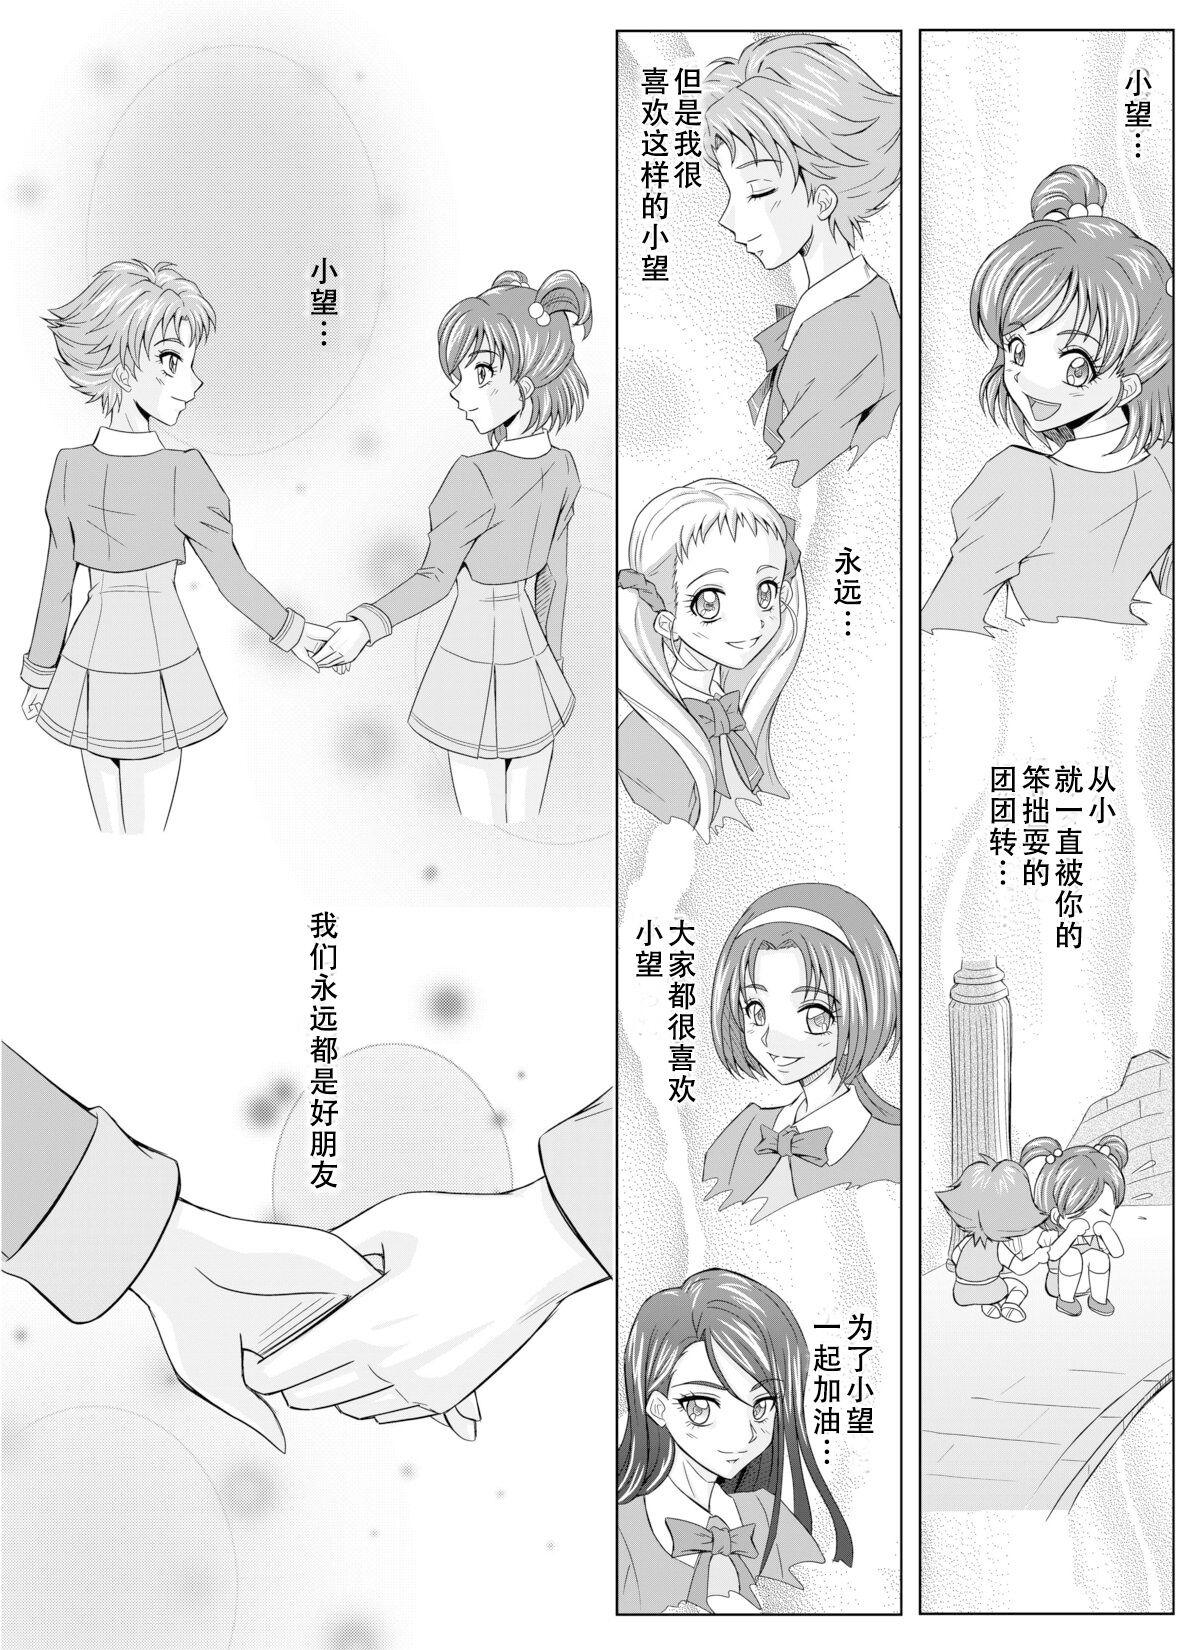 [MACXE'S (monmon)] Mou Hitotsu no Ketsumatsu ~Henshin Heroine Kairaku Sennou Yes!! Precure 5 Hen~ 另一个结局 变身女英雄快乐洗脑 yes!! 光之美少女5篇 第二话 (Yes! PreCure 5) [Chinese] [LLQ个人汉化] 1